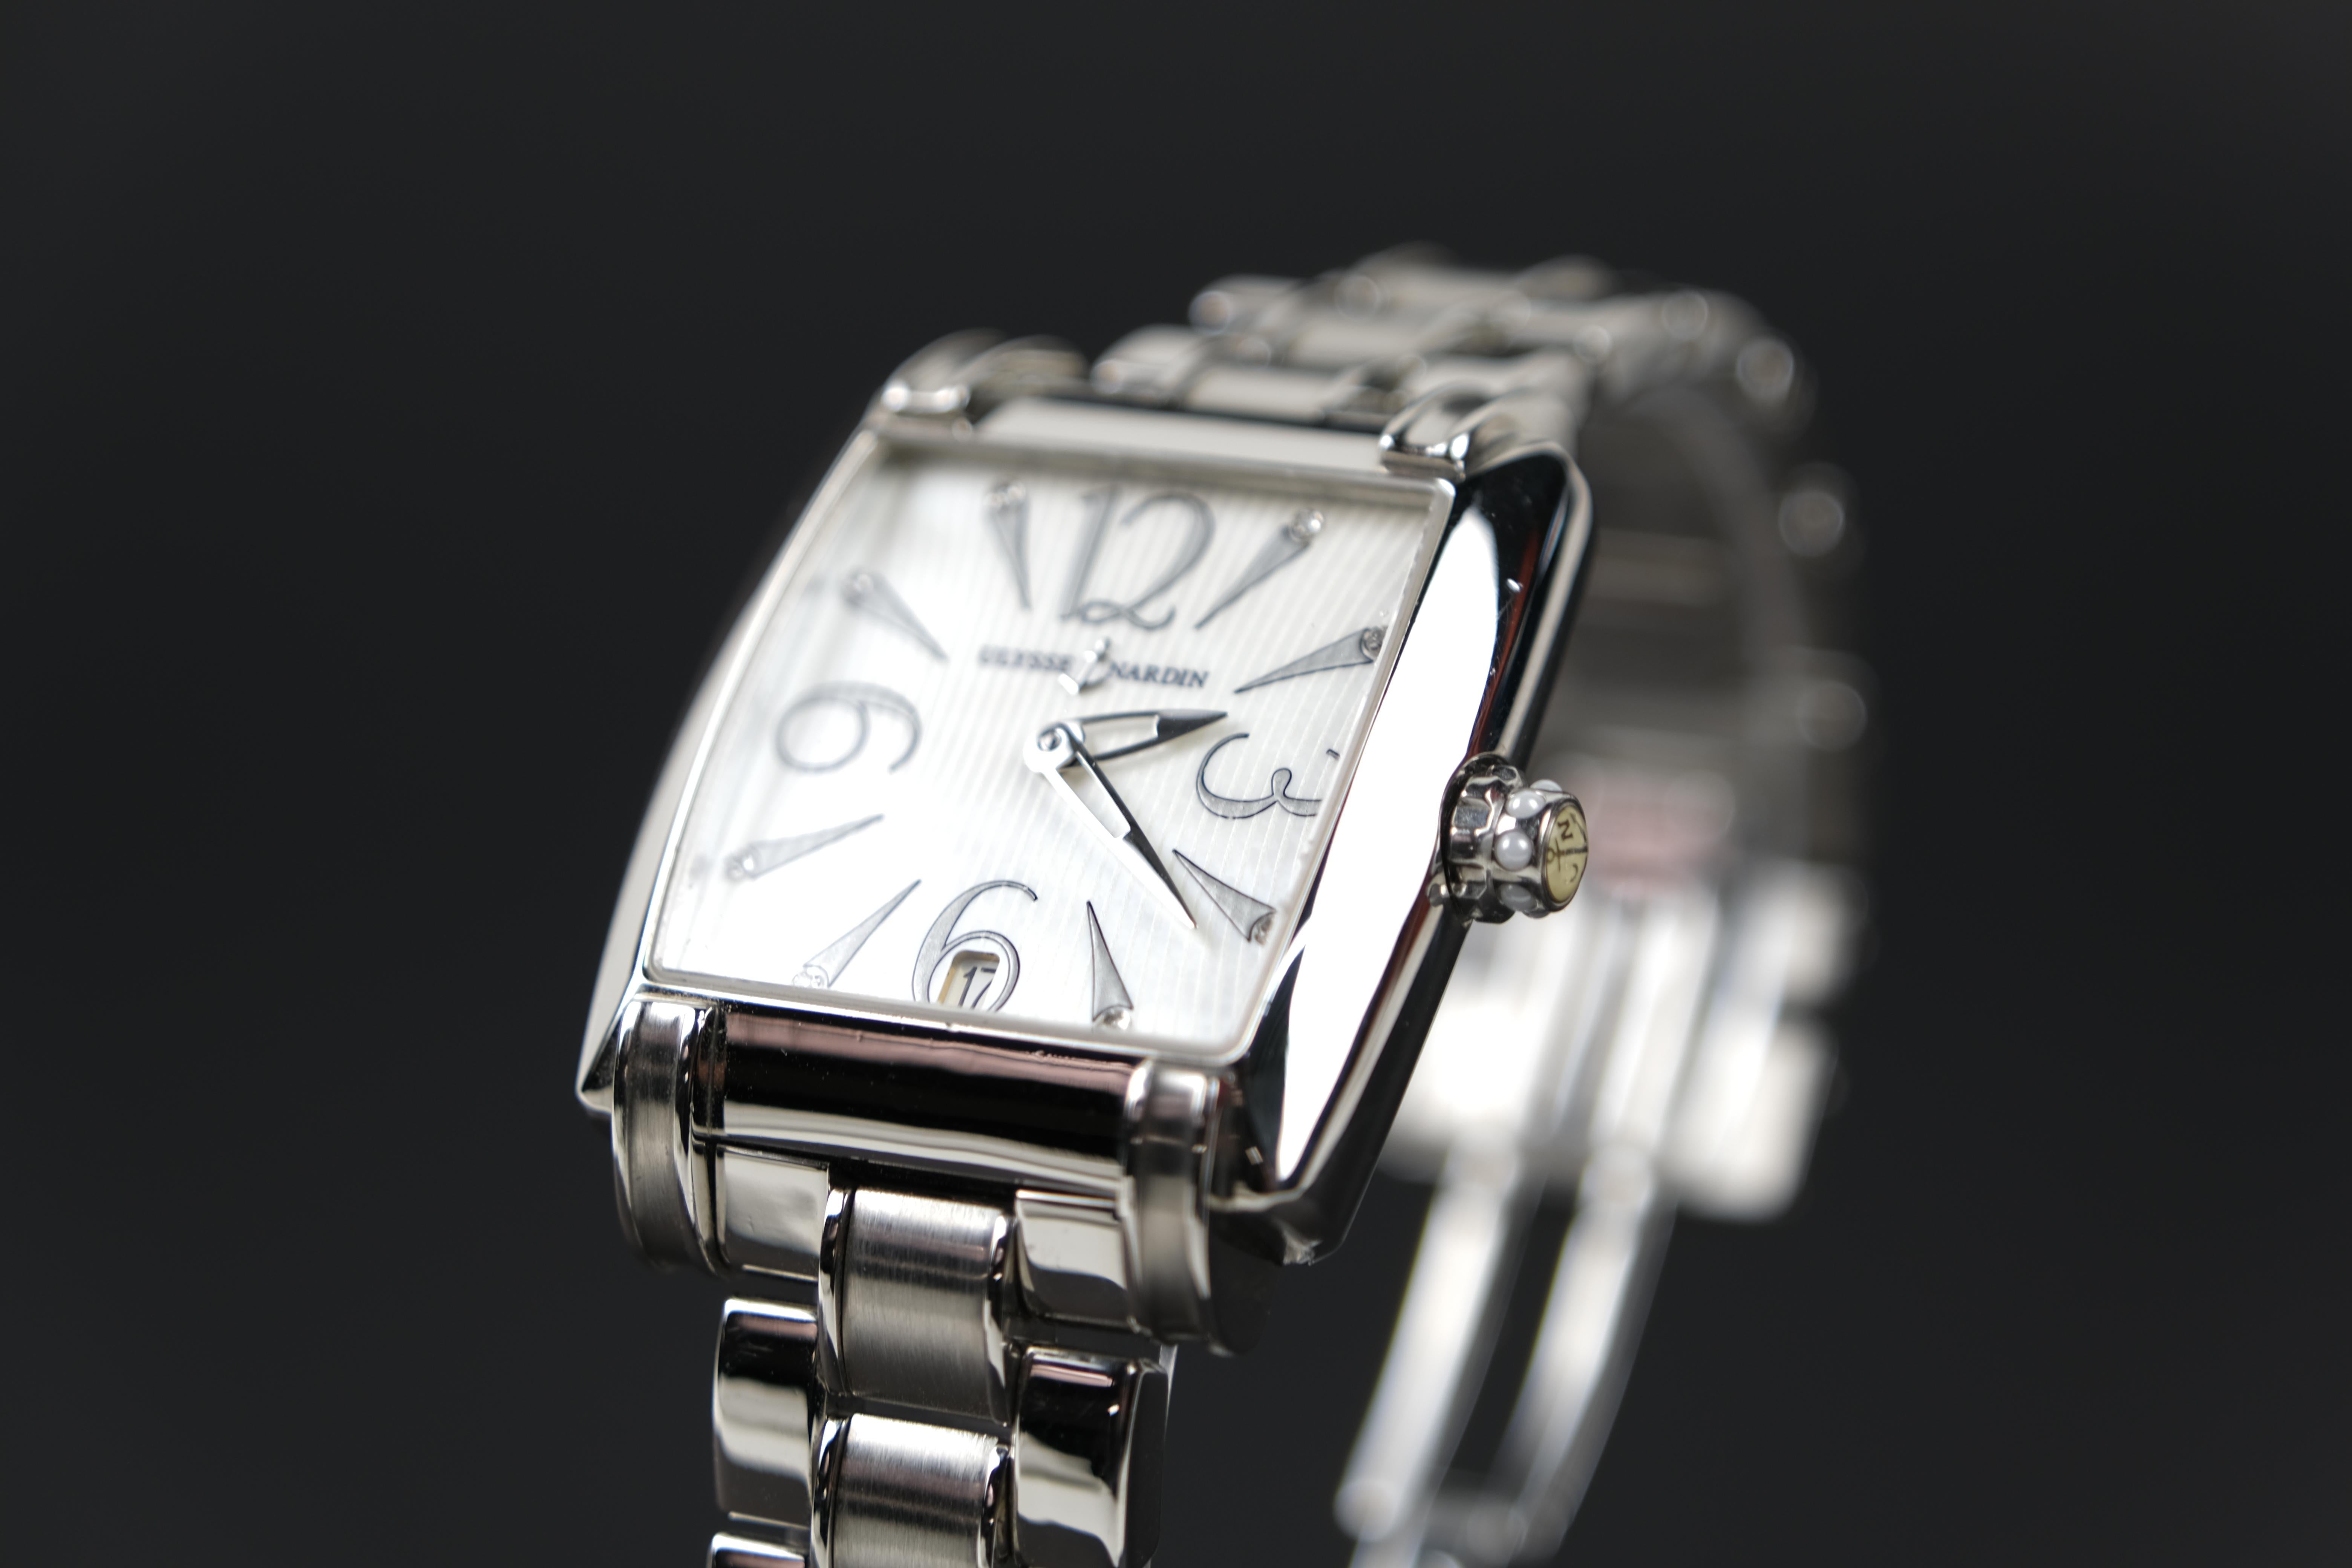 caprice quartz watch